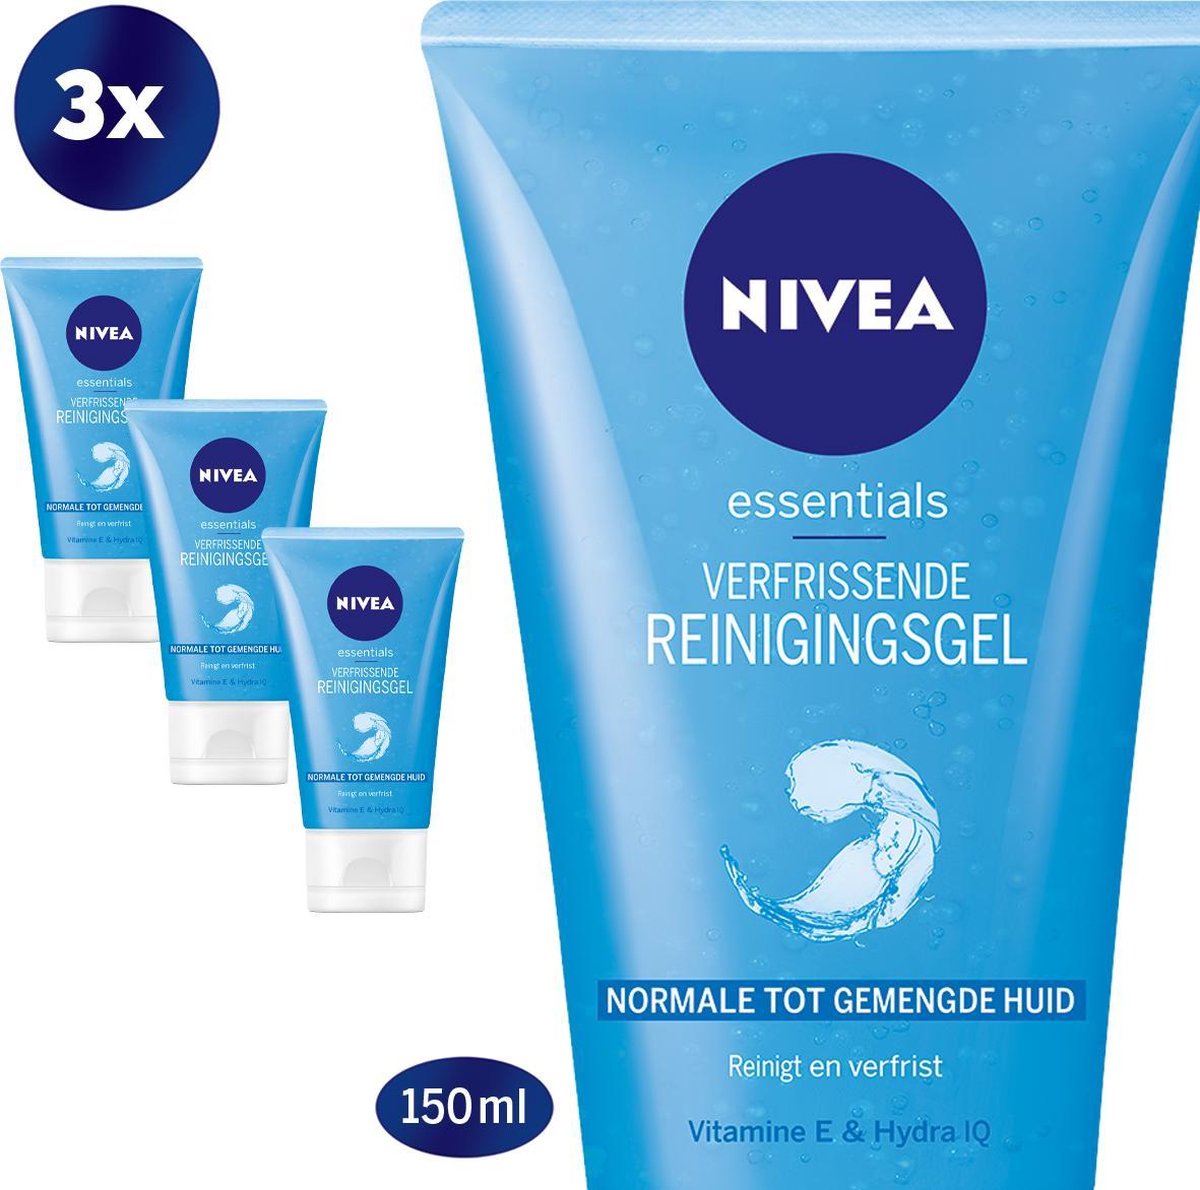 NIVEA Essentials Verfrissende Reinigingsgel - Gezichtsreiniger - 3 x 150 ml - Norm/Gem. Huid